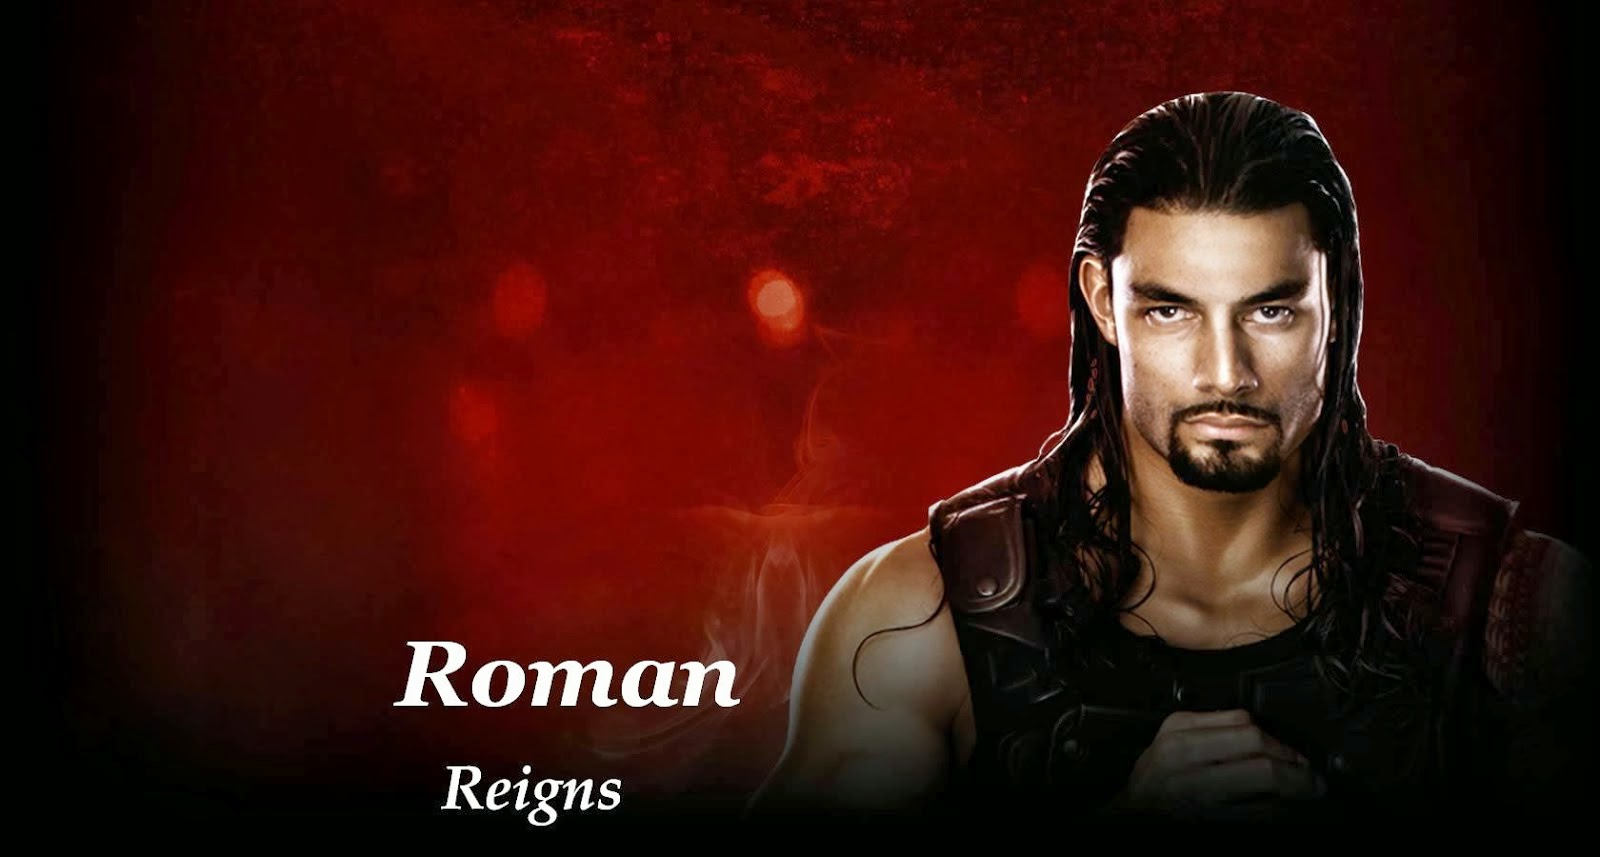 Wwe Roman Reigns HD Wallpaper Wrestling